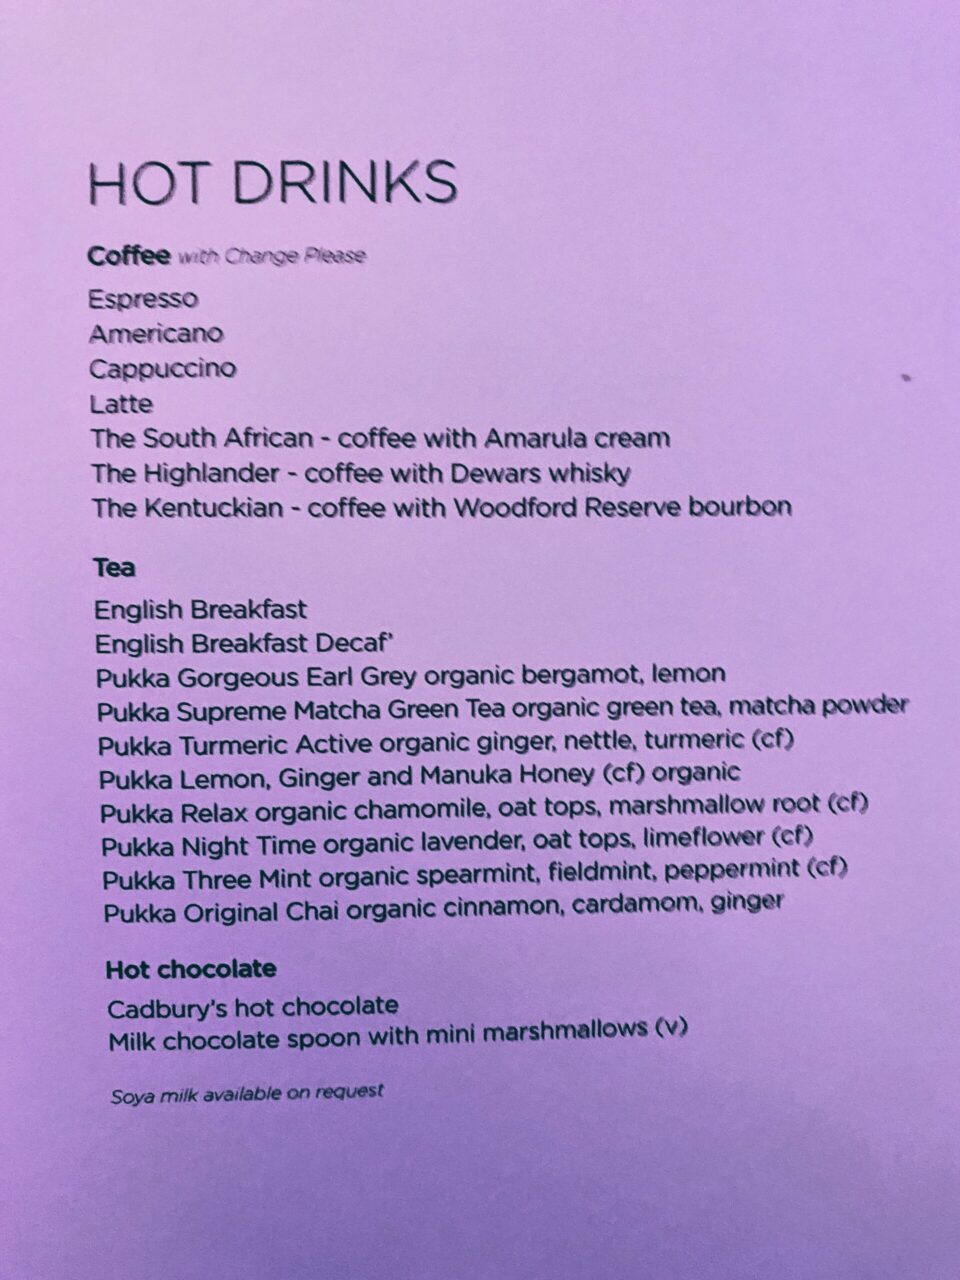 Virgin Atlantic B787 Upper Class hot drinks menu 